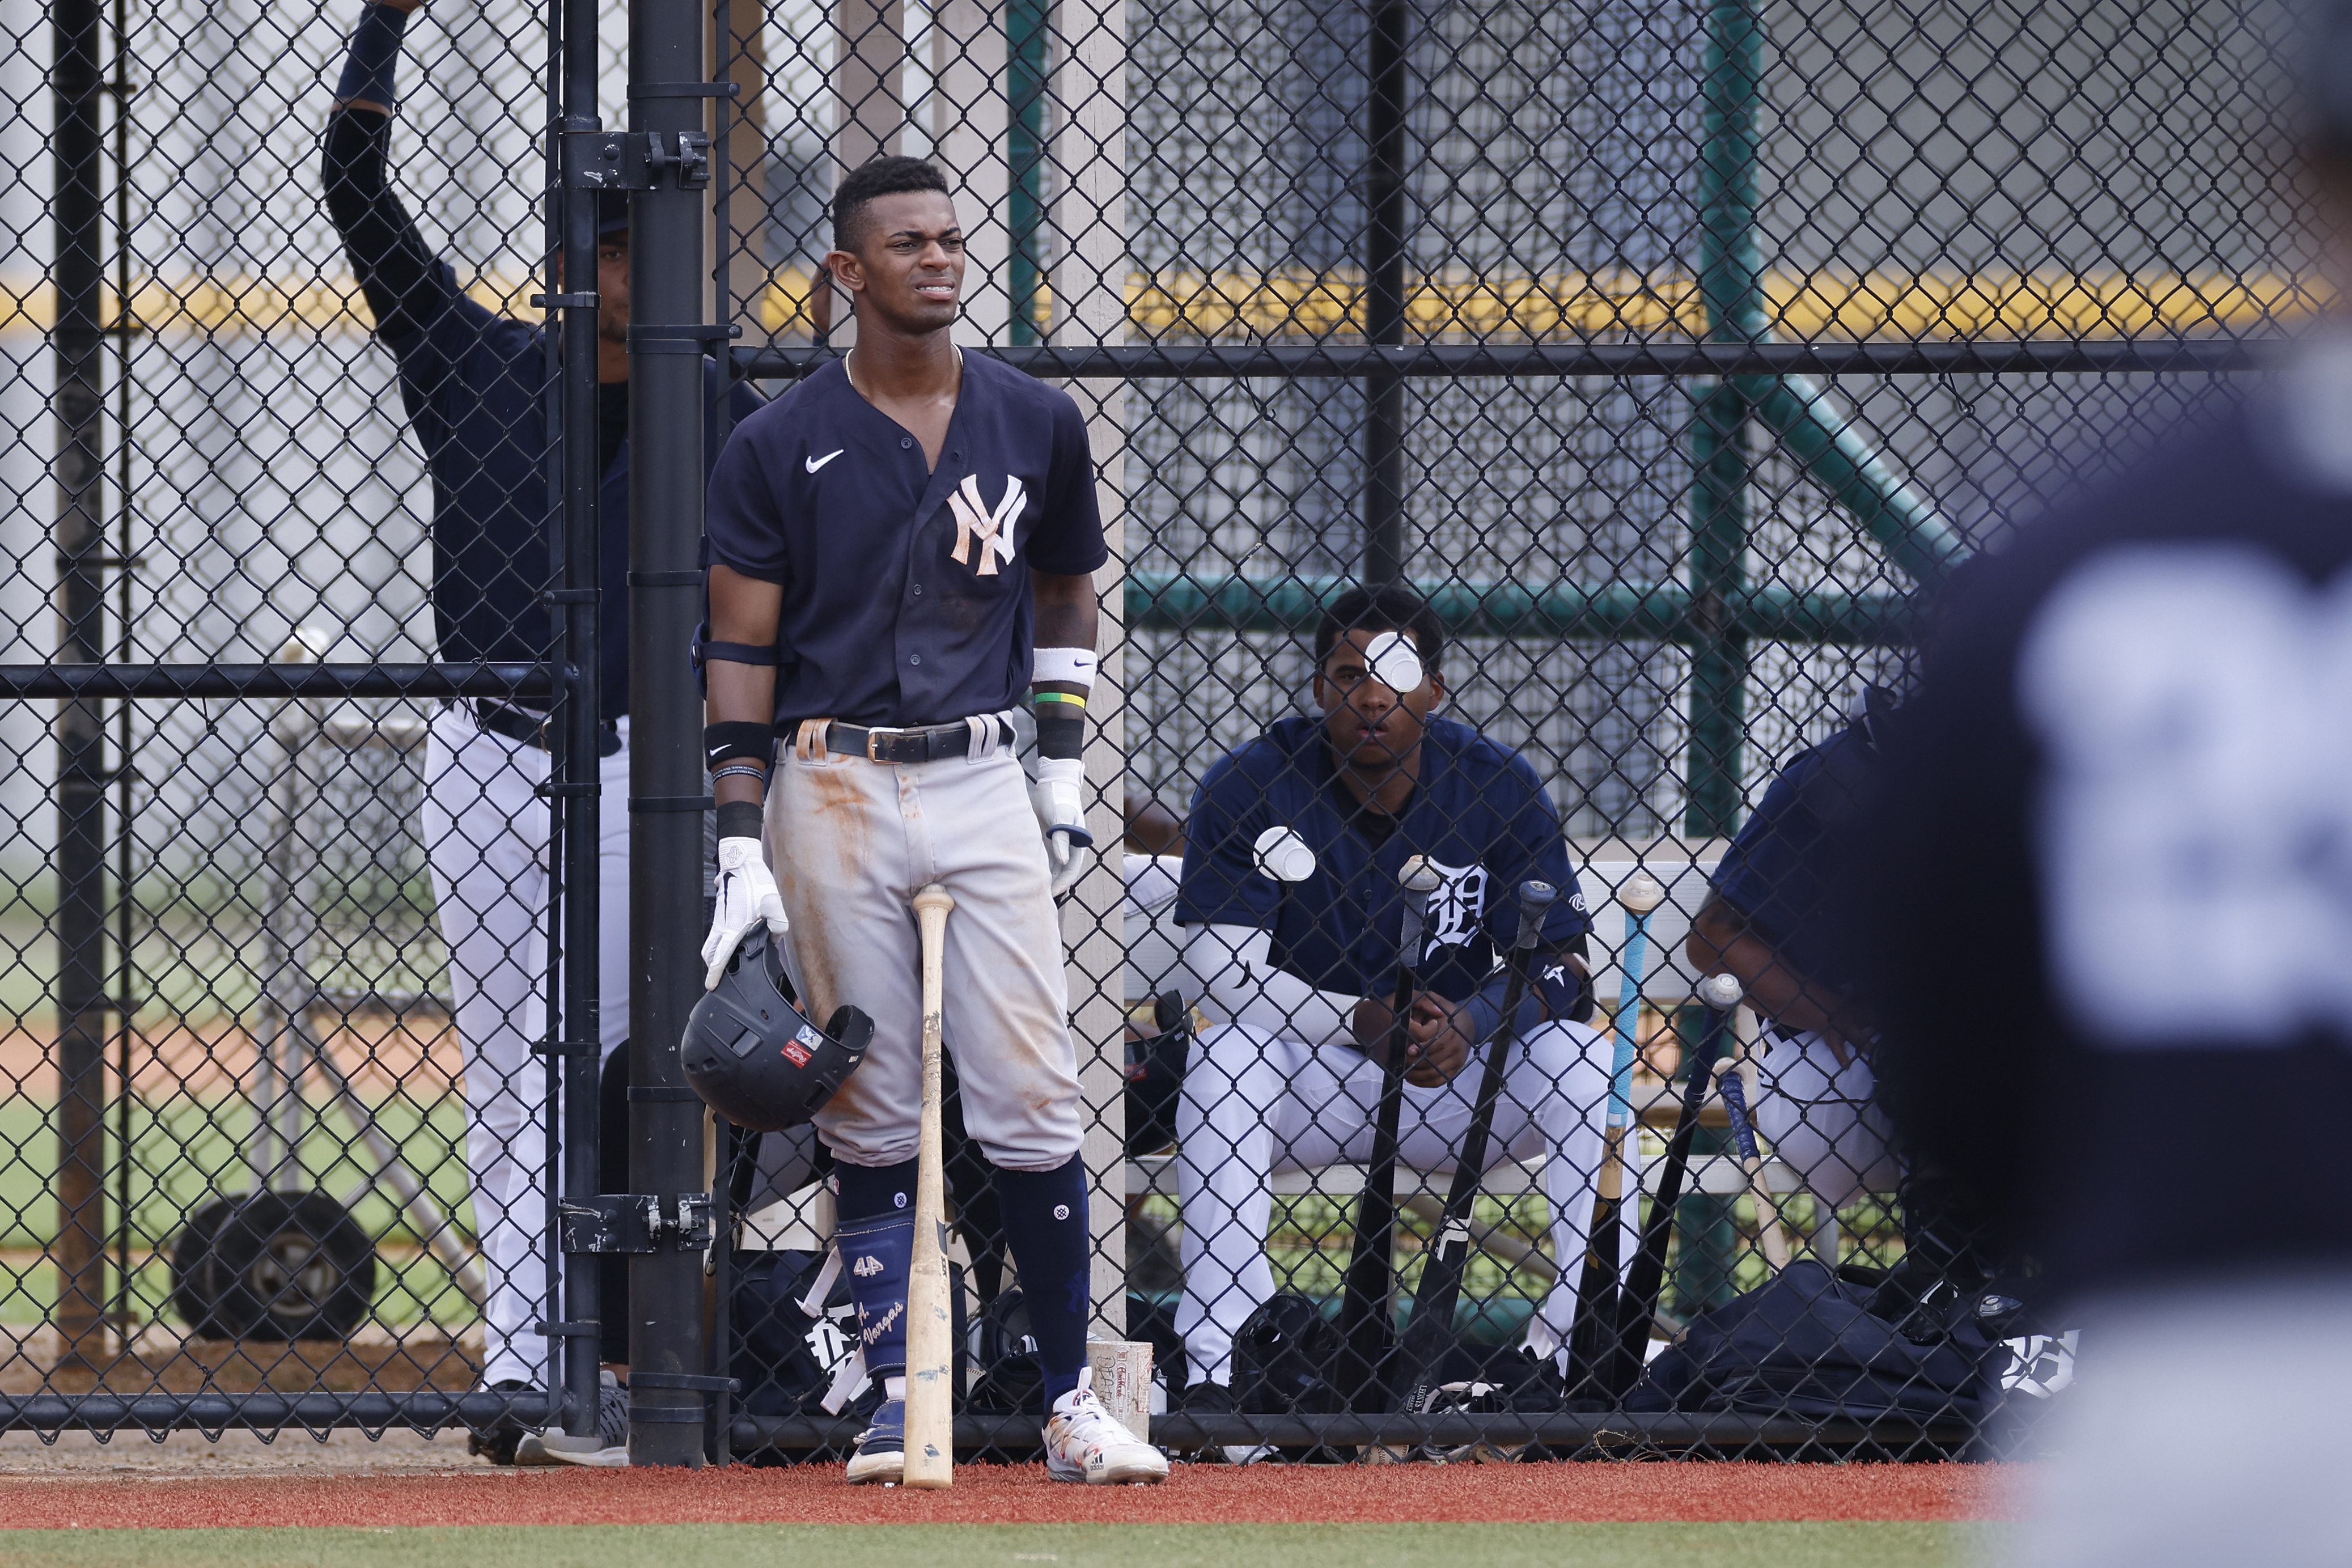 MiLB: JUL 09 Florida Complex League - Yankees v Tigers